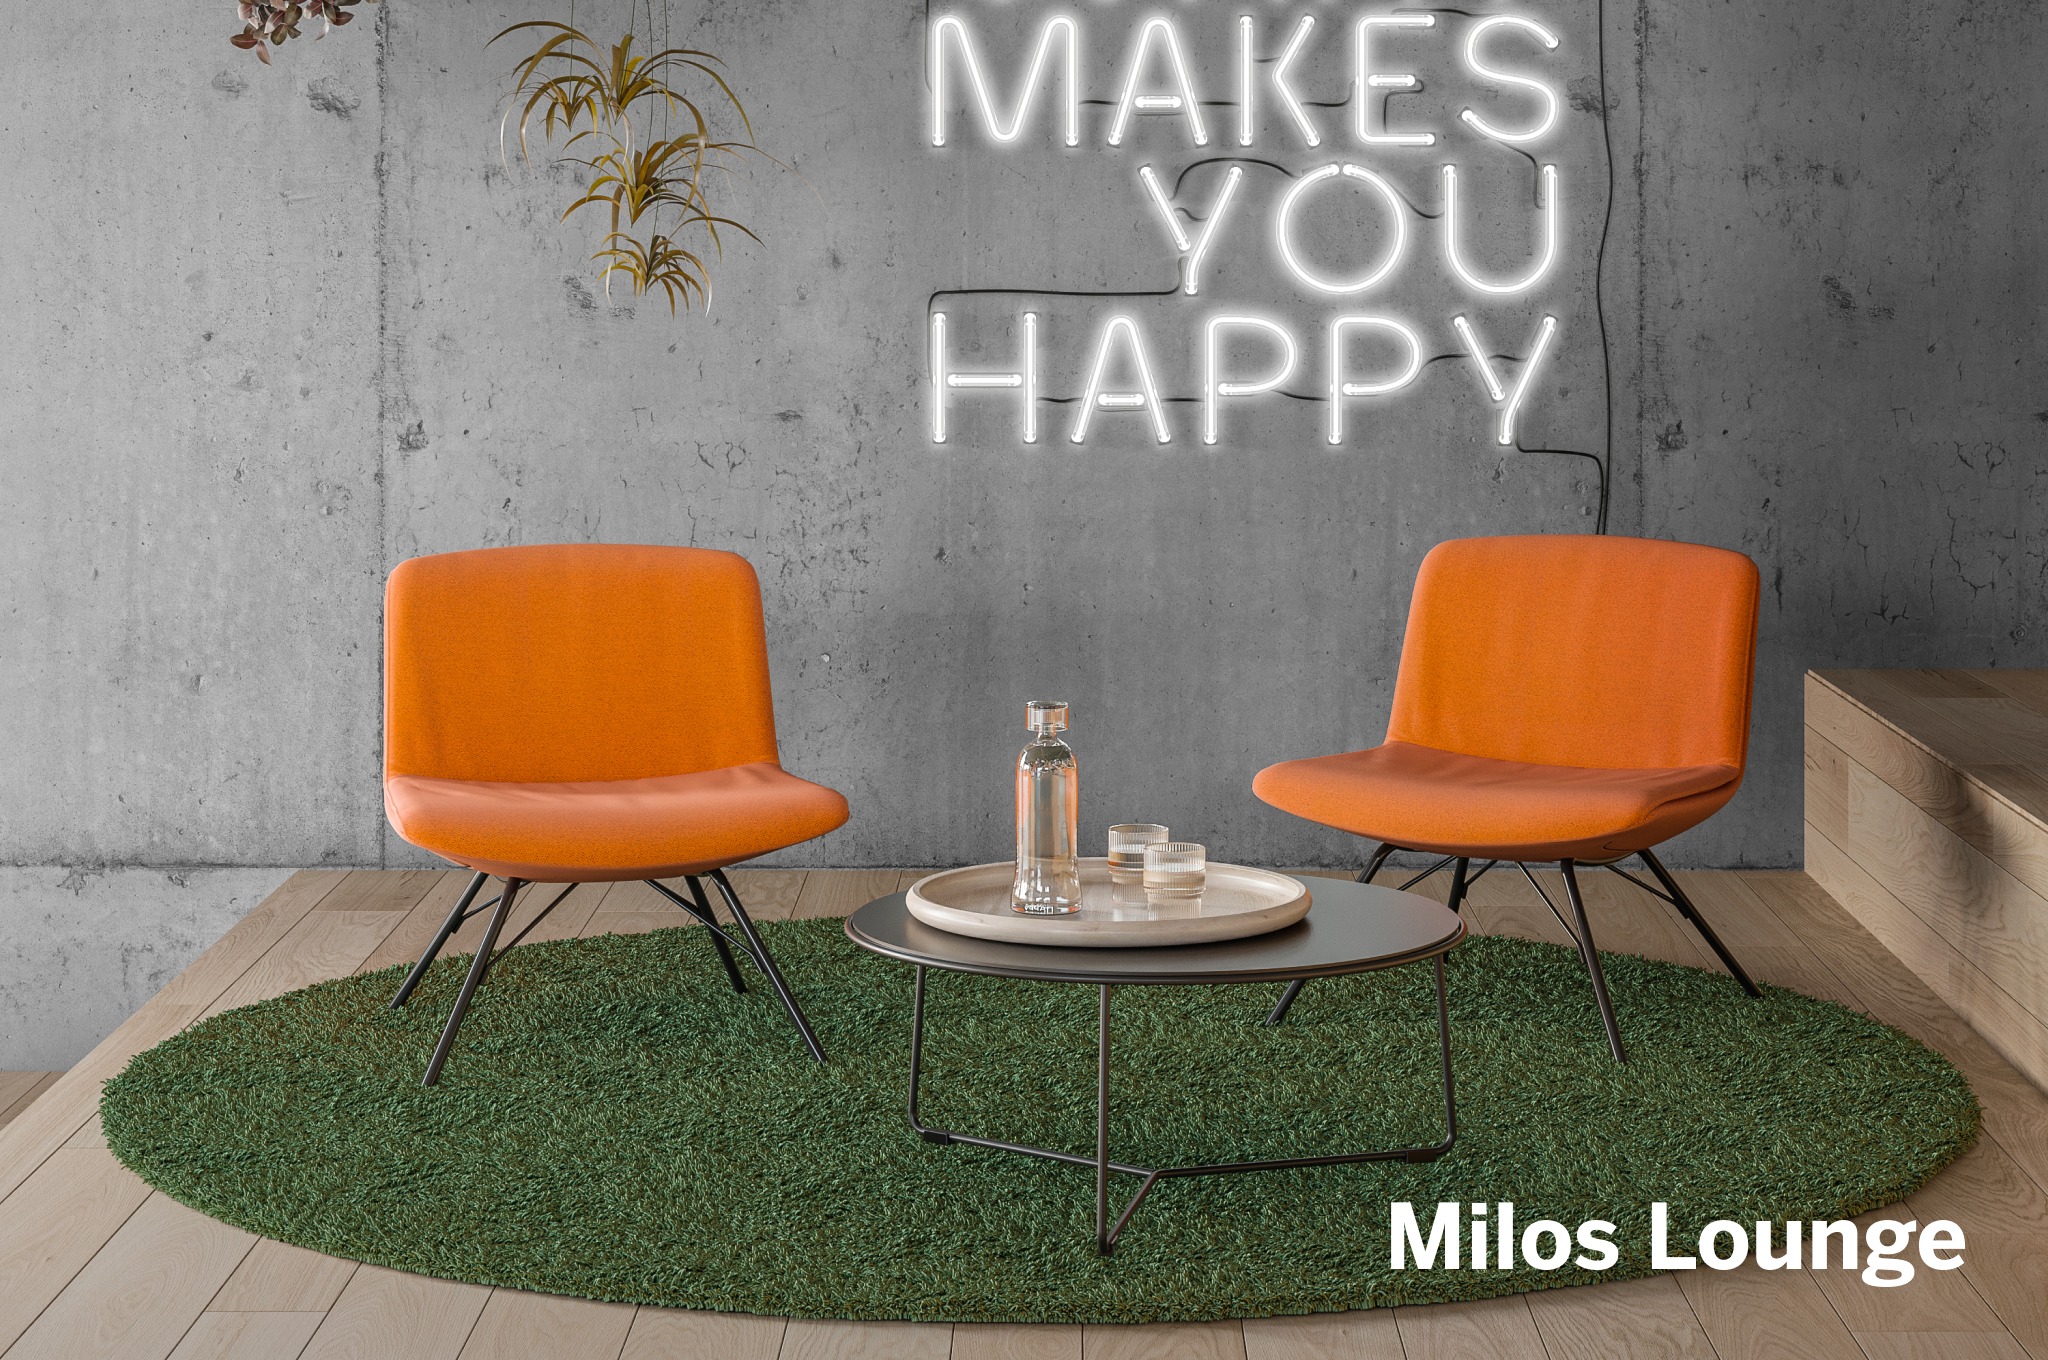 MILOS design by_ Dorigo Design